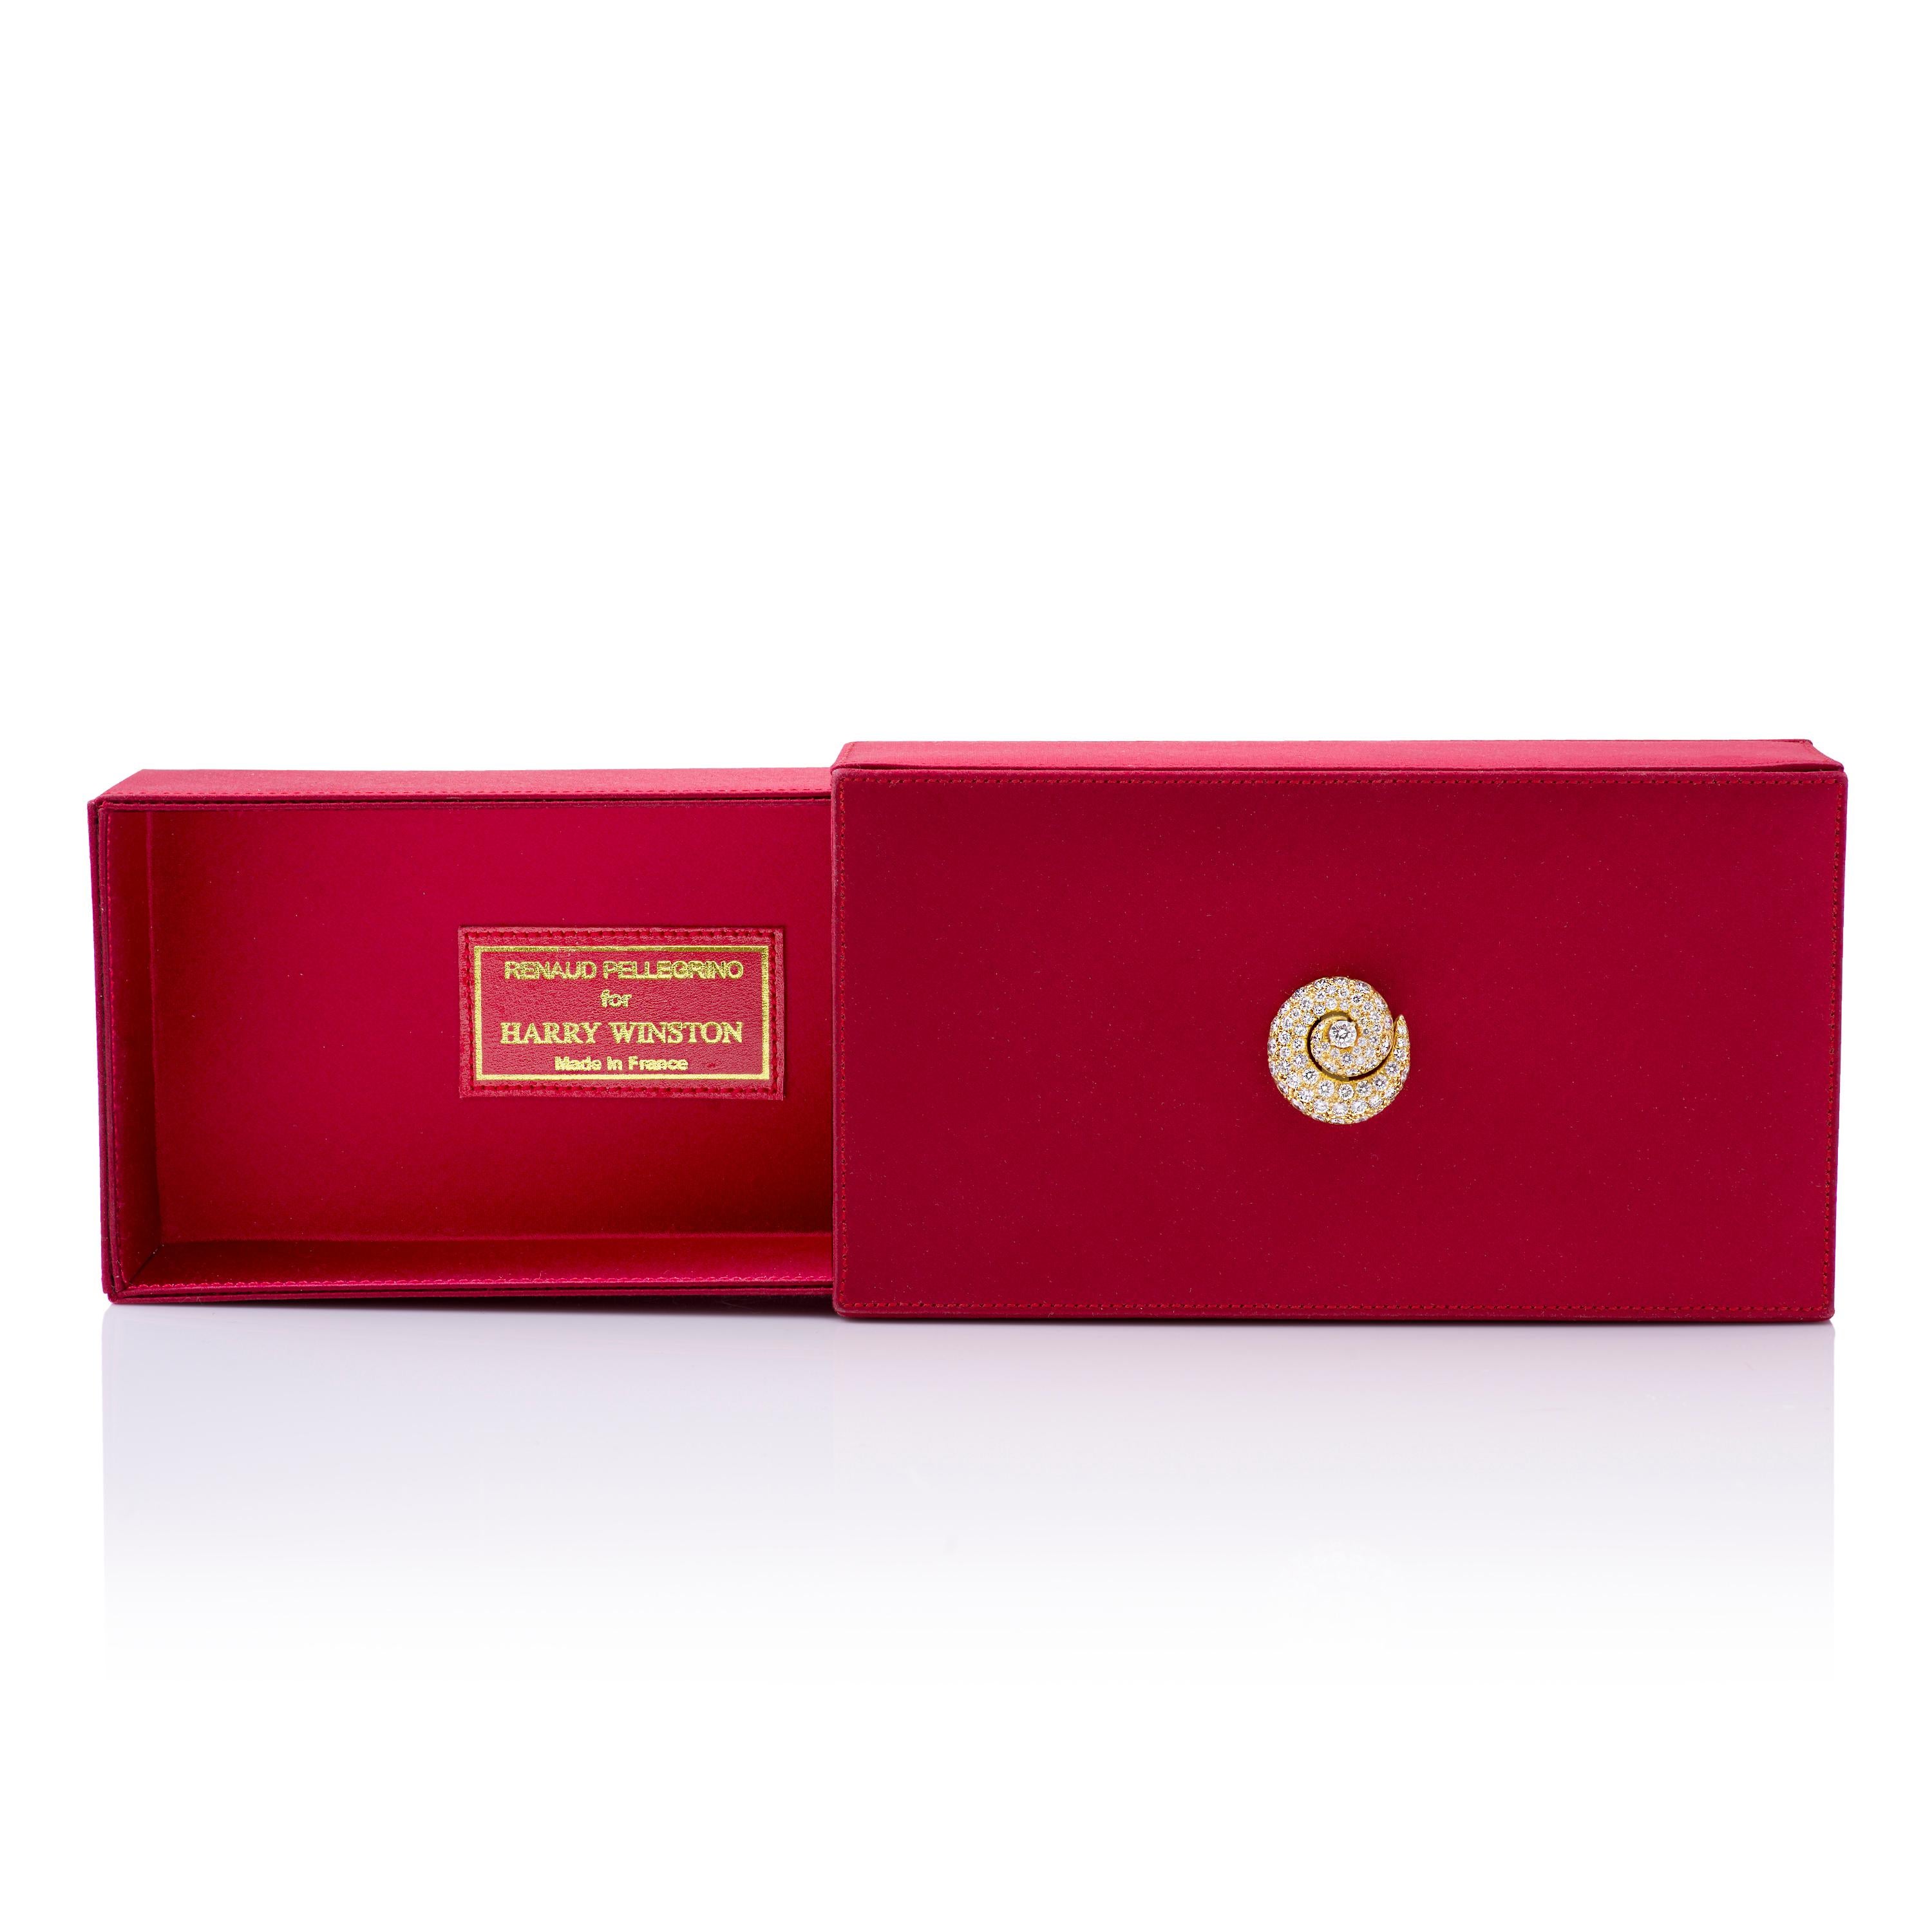 Vintage Renaud Pelligrino für Harry Winston roten Satin Abend Box mit 18k Gelbgold und Diamant-Akzent, die als Clutch oder Schmuck-Box verwendet werden kann.  

Diese Kupplung verfügt über eine verzierte 18k Gelbgold Wirbel mit rund 4,97 Karat